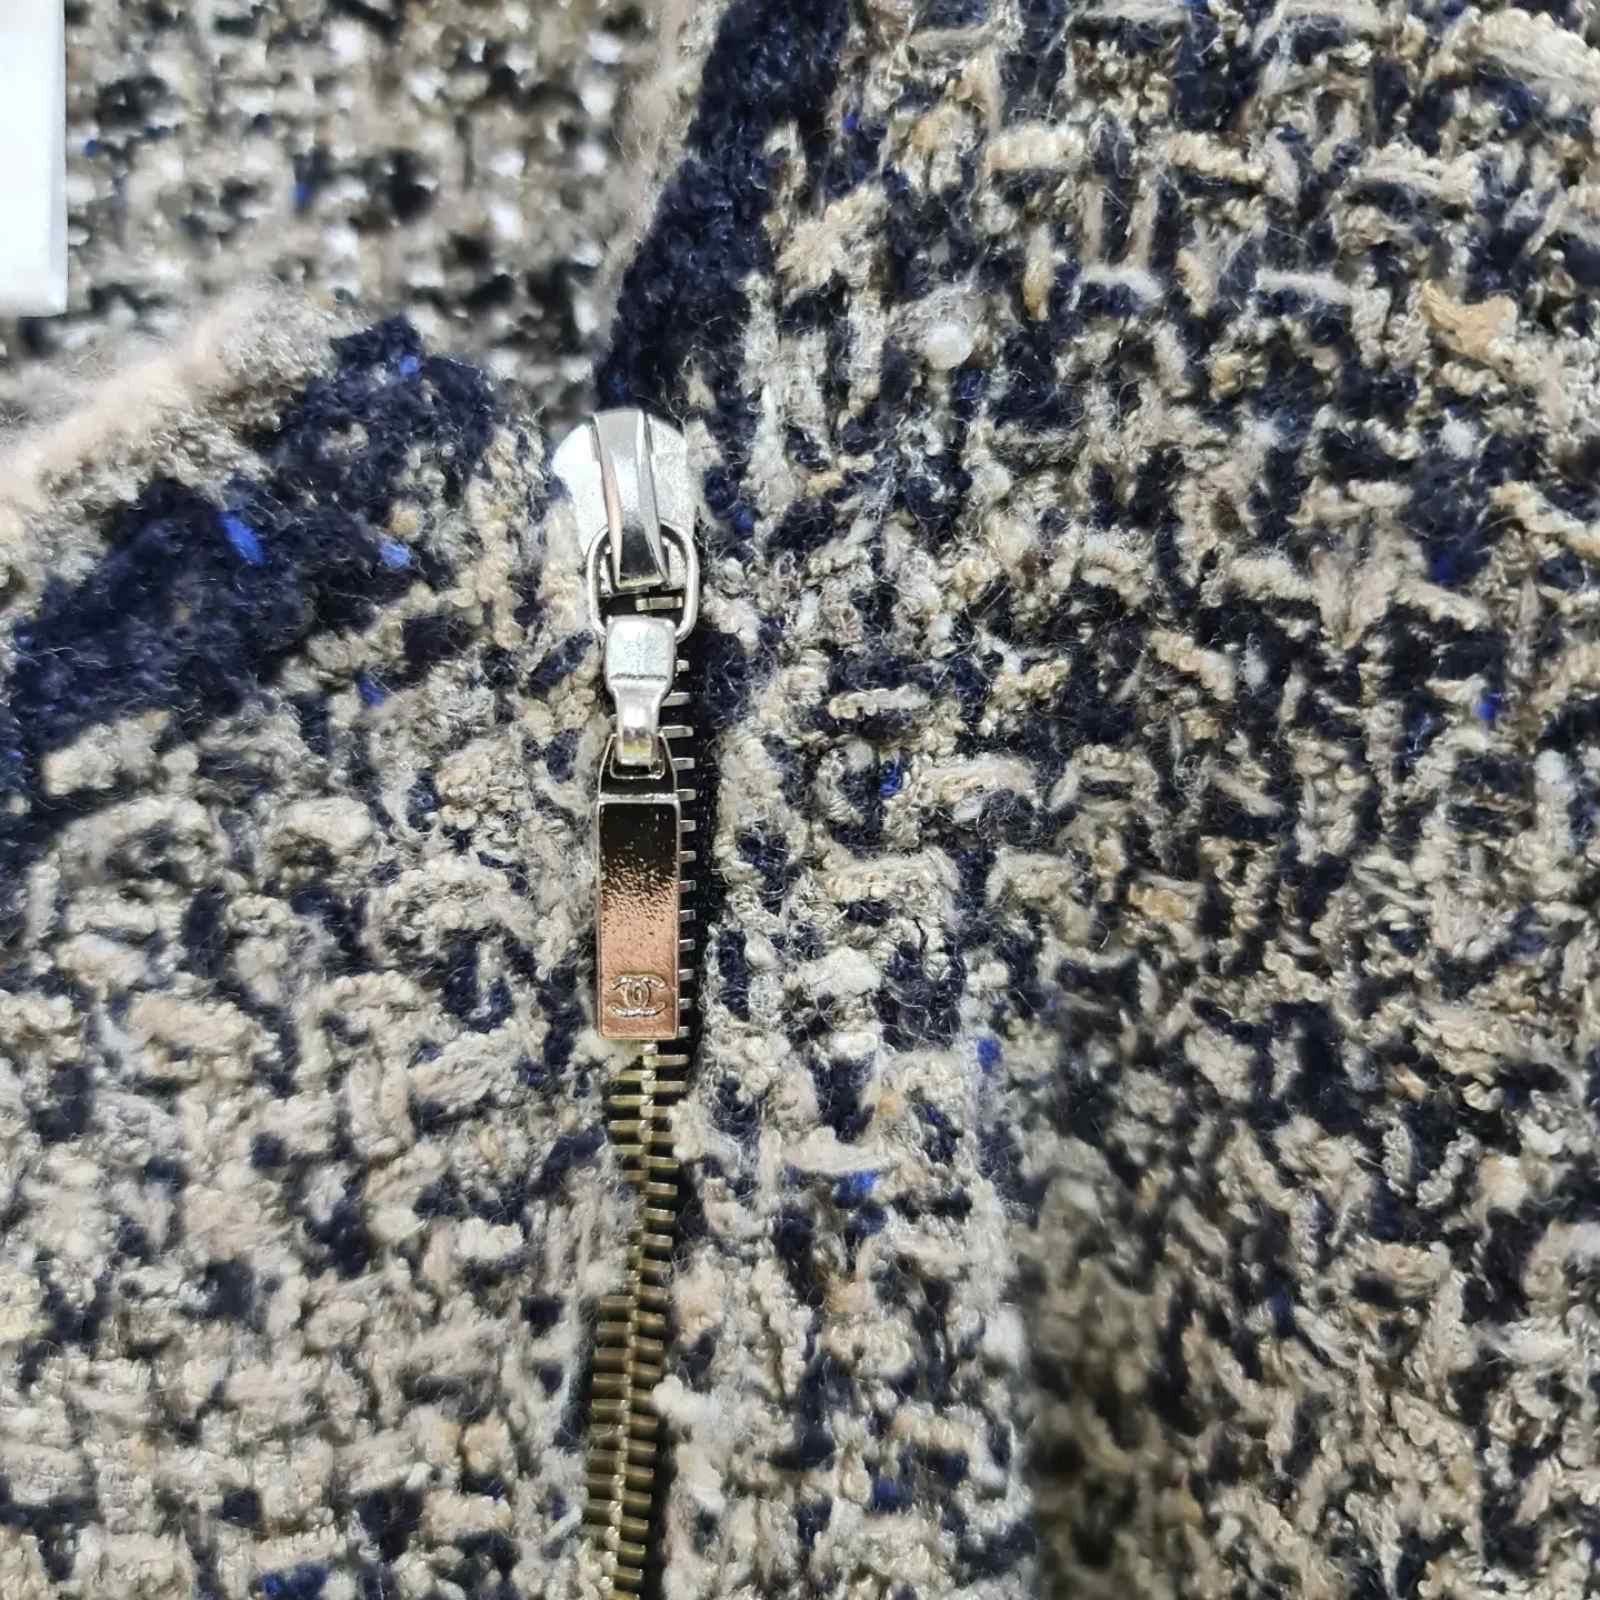 CHANEL A/W 2011 Seidenkaschmir-Bouclé-Jacke mit seitlichem Reißverschluss.
Grau-, Blau-, Beige- und Brauntöne.
Lange Ärmel mit einfachem Knopfverschluss an der Manschette.
Zwei-Wege-Metall-Reißverschluss, der diagonal entlang der vorderen linken